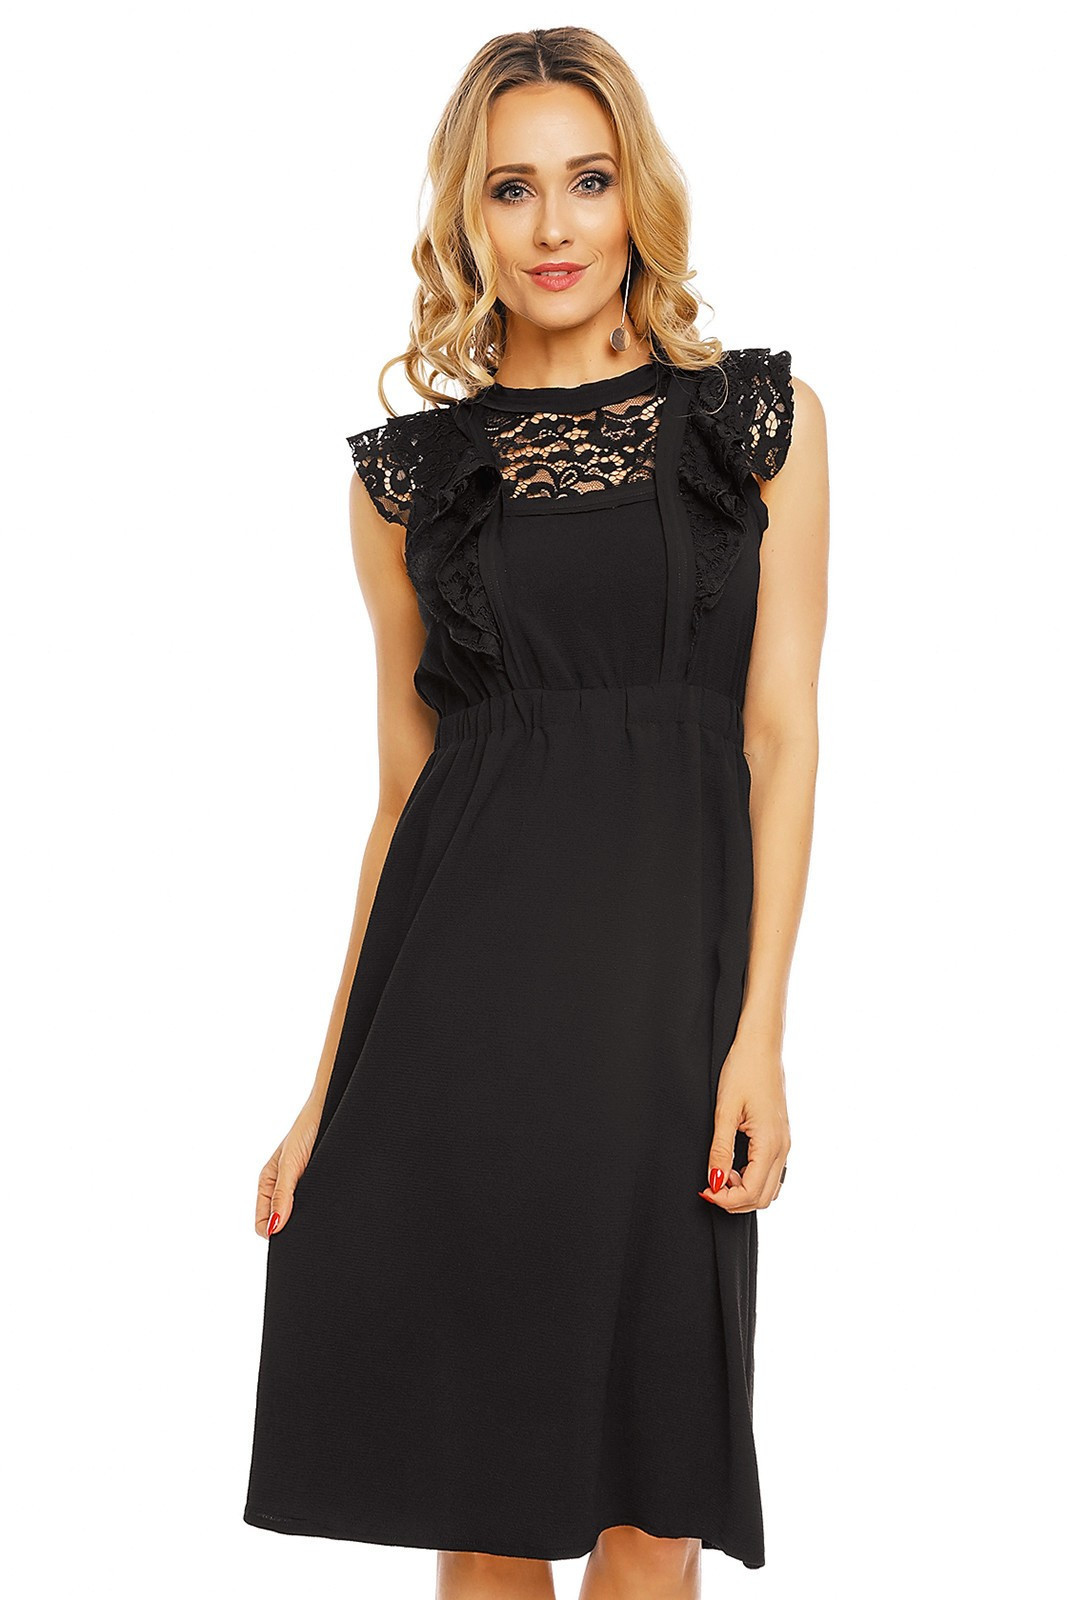 Dámské šaty s krajkovým rukávem středně dlouhé černé - Černá - Elli White černá S/M